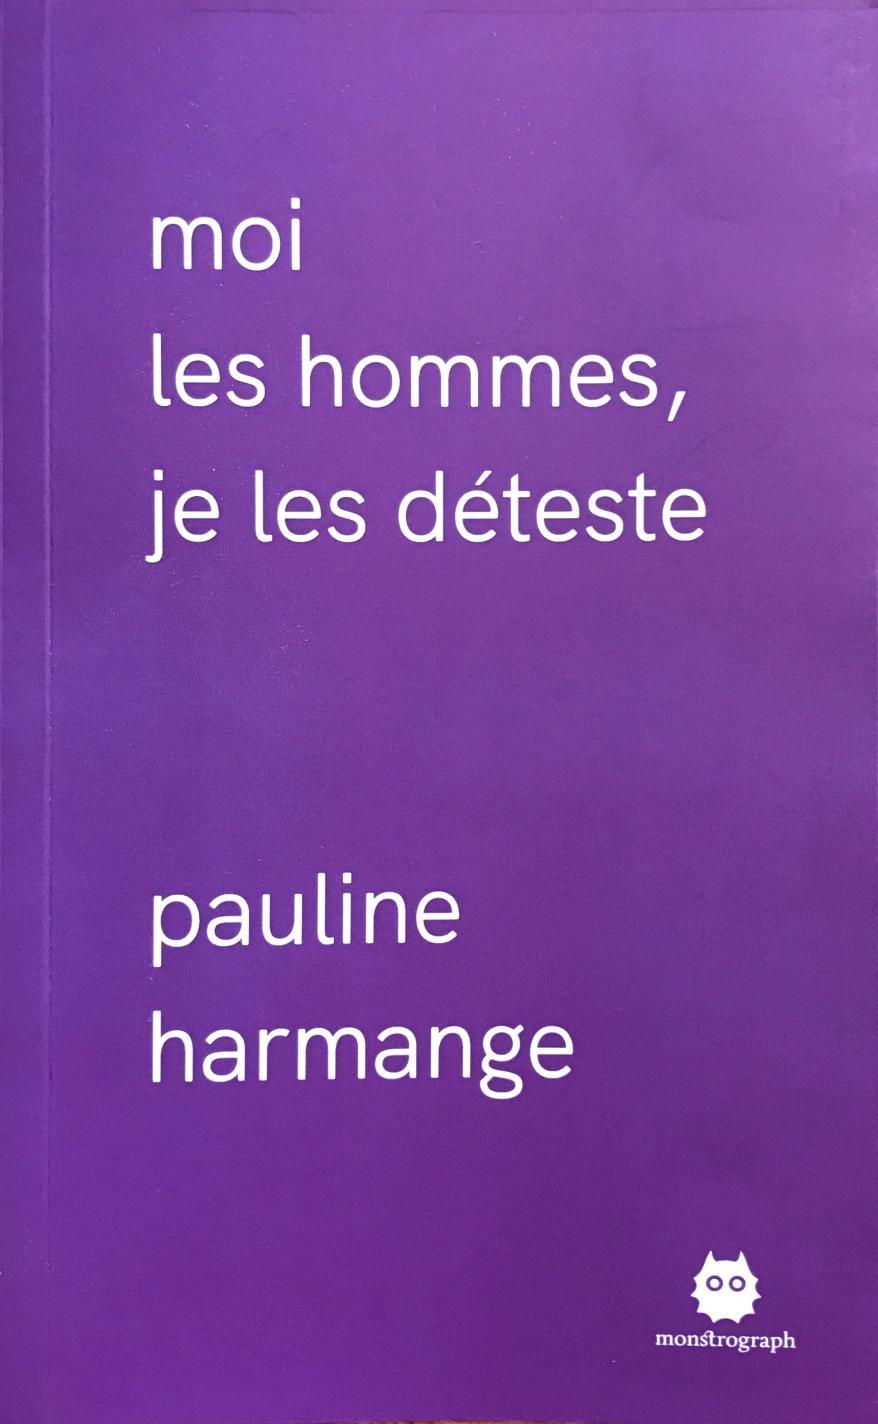 Pauline Harmange: Moi les hommes, je les déteste (French language, 2020, Monstrograph)